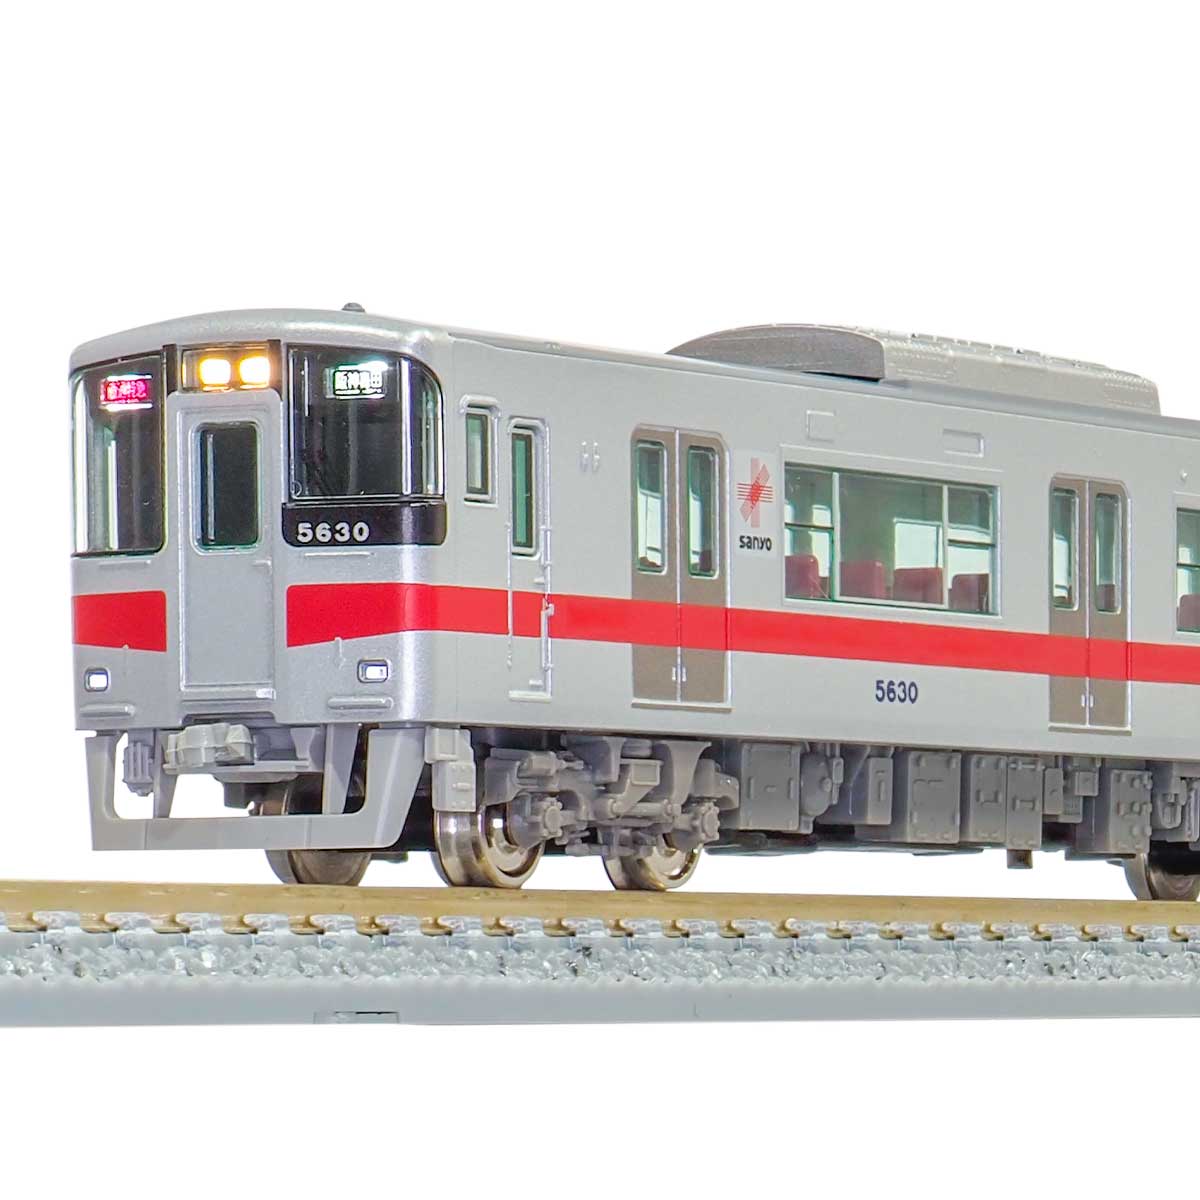 グリーンマックス30793山陽電鉄5030系(新シンボルマーク)2018年6両